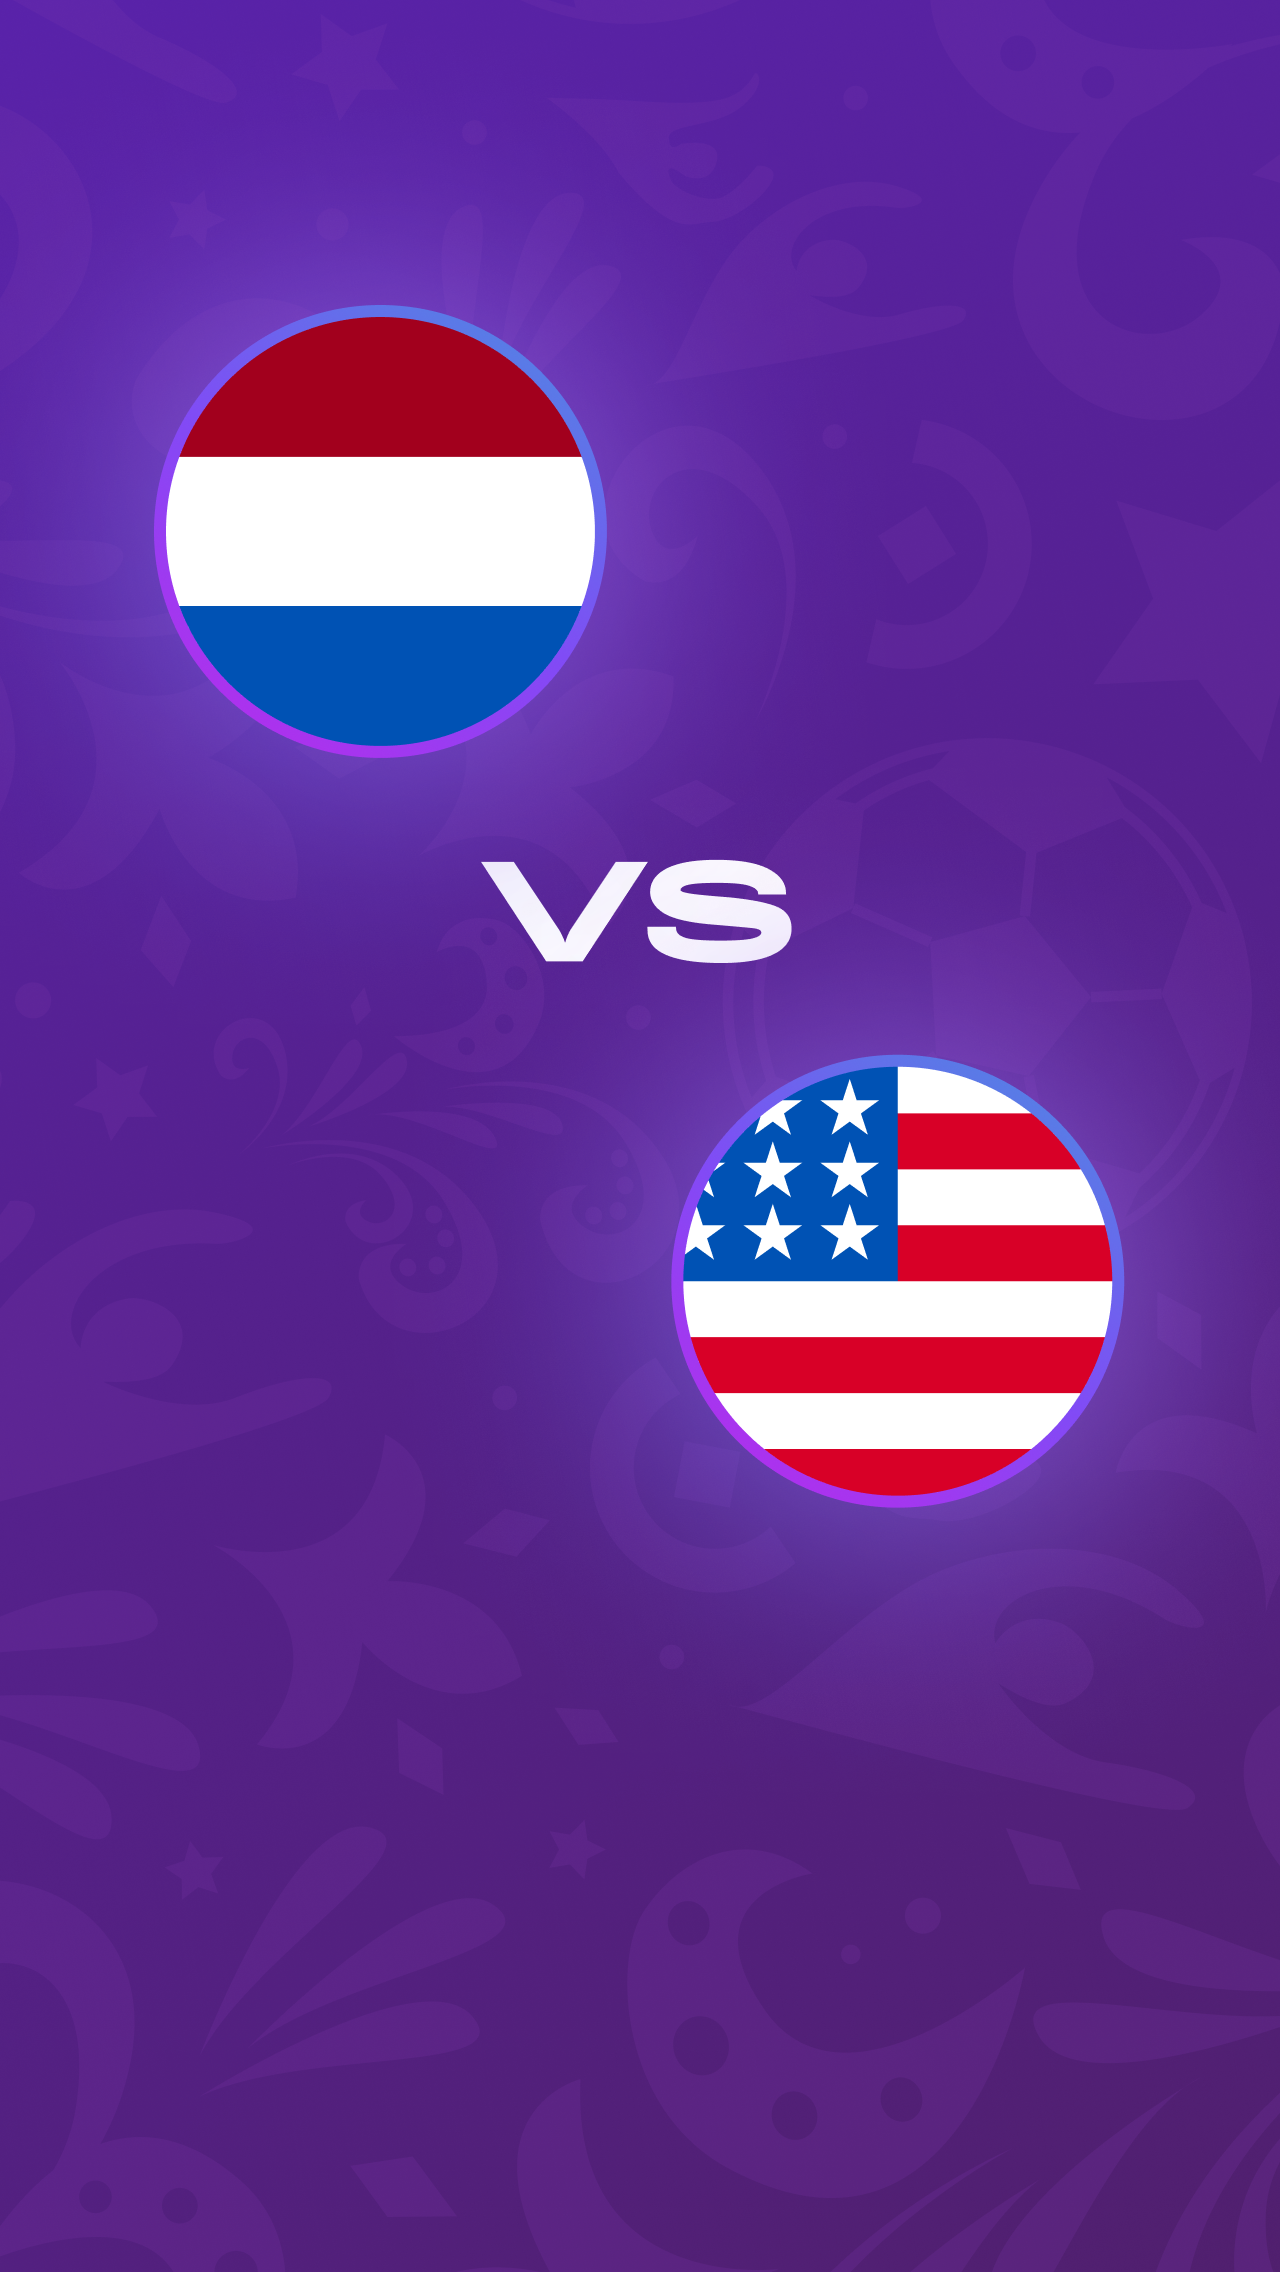 1/8 финала, 3 декабря, 18:00: Нидерланды против США